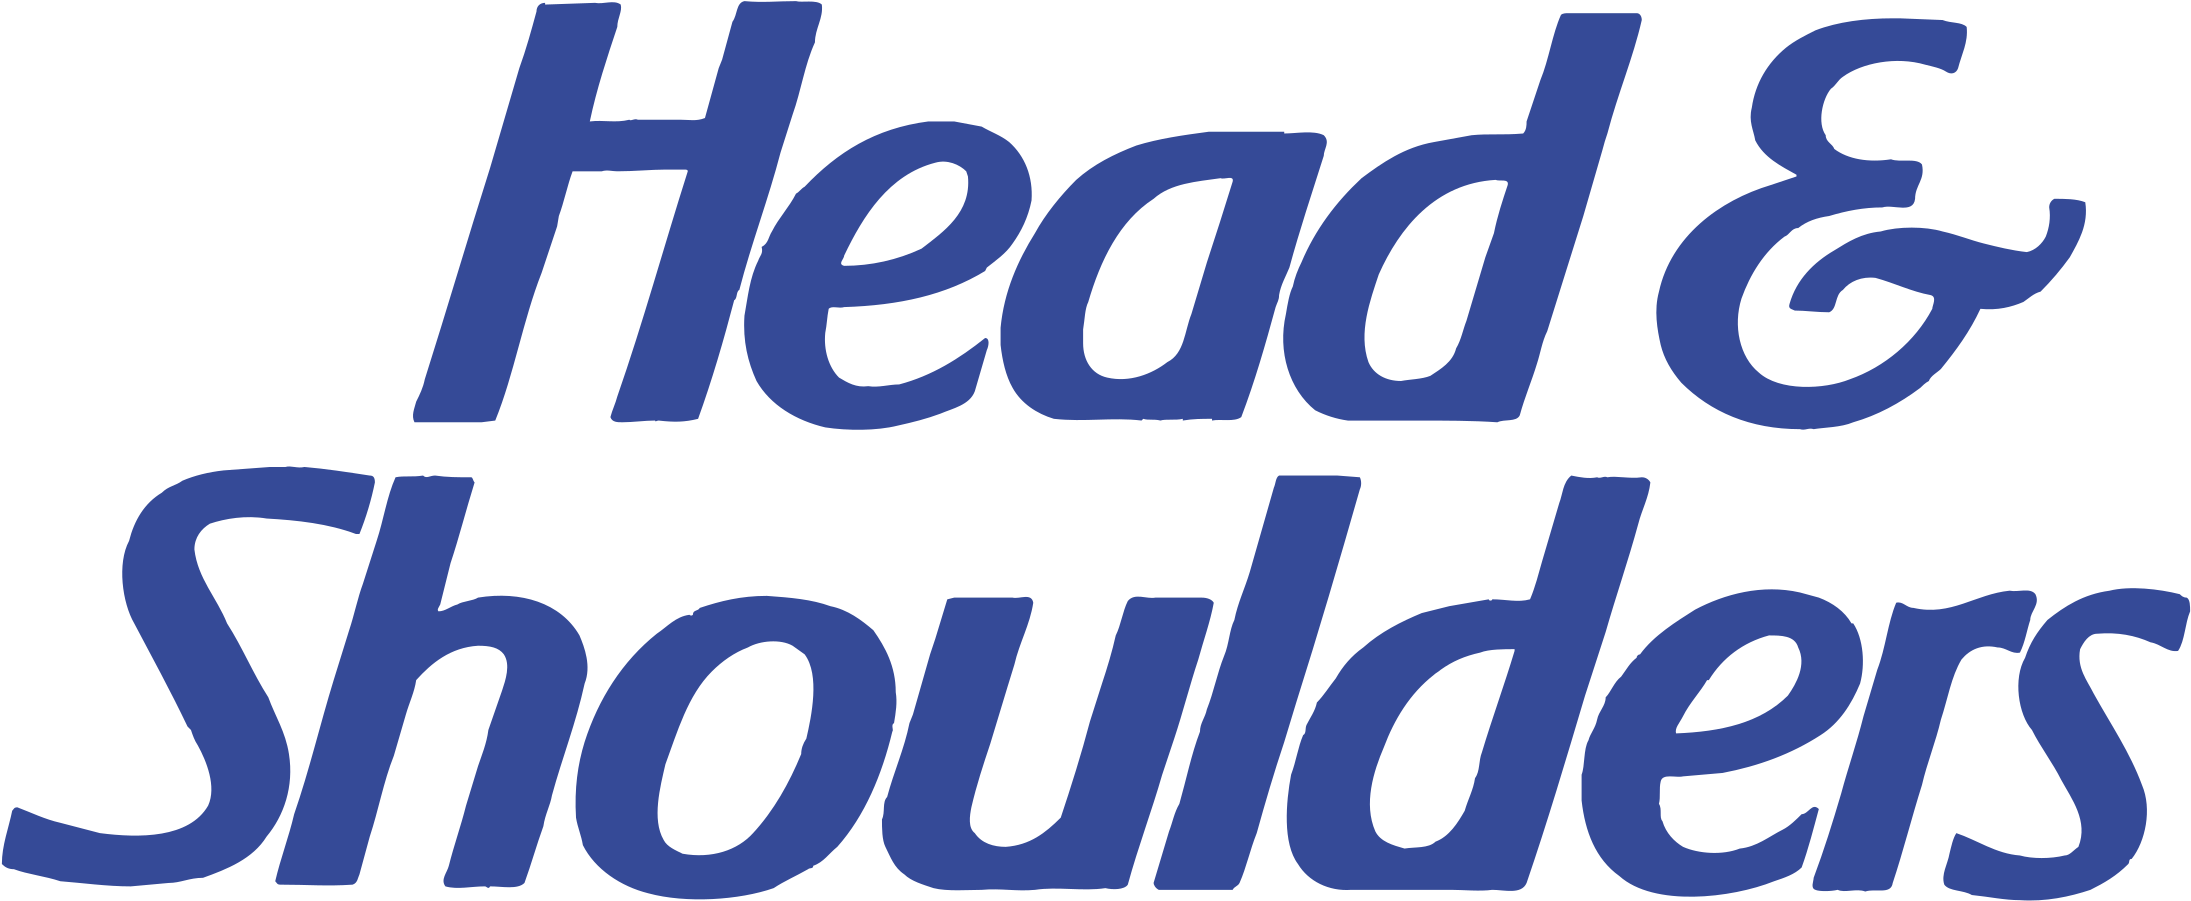 Head & Shoulders Logo Png Transparent - Head & Shoulders Clipart (2400x2400), Png Download